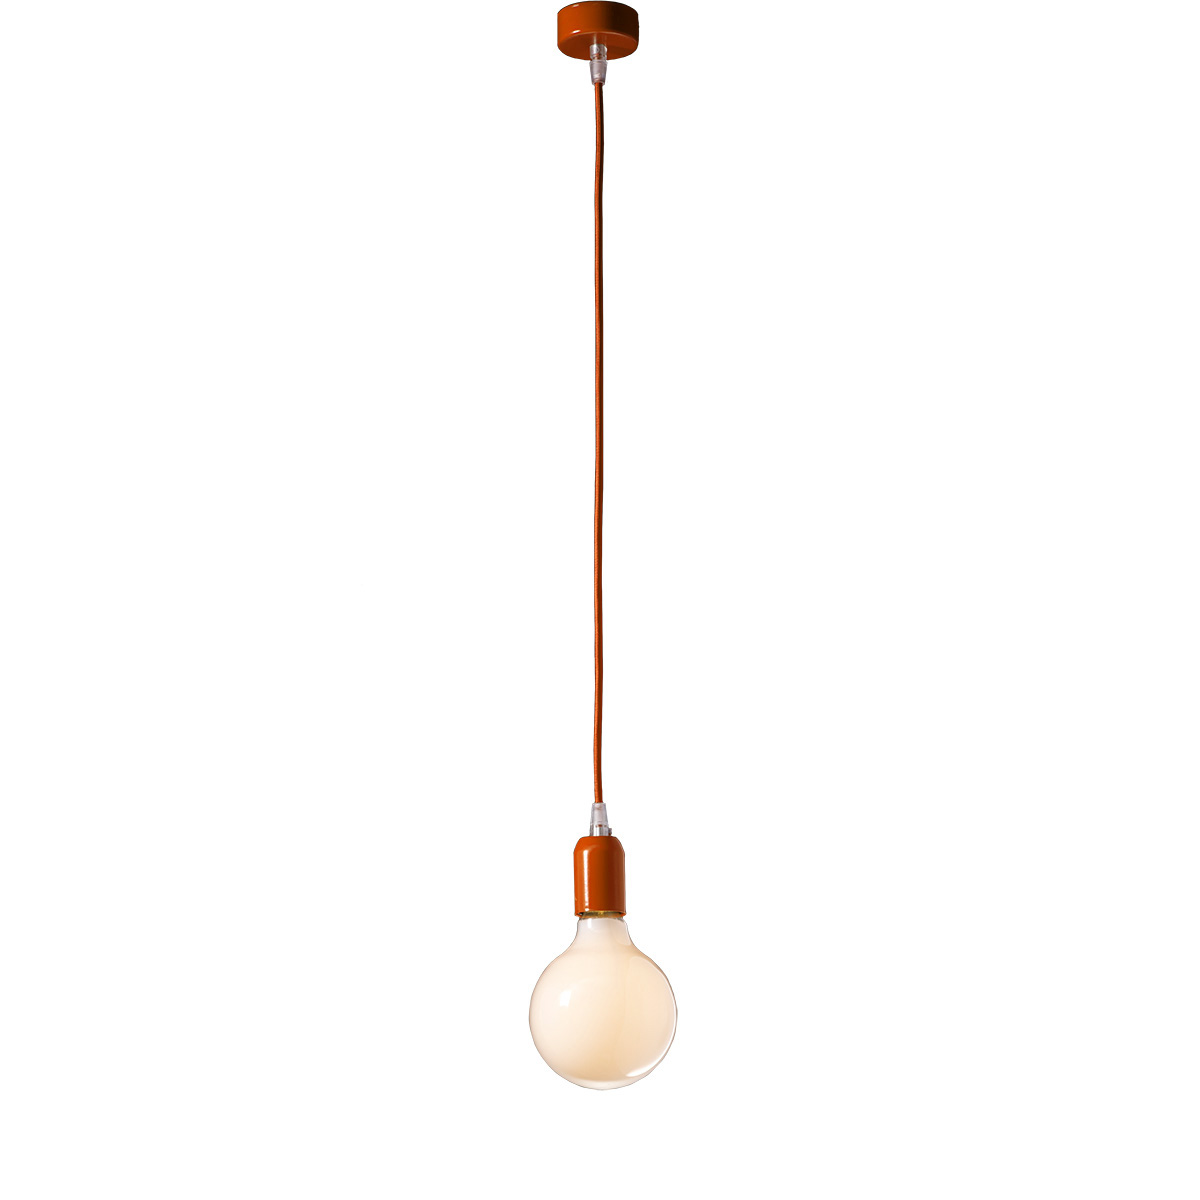 Μοντέρνο πορτοκαλί μονόφωτο ΚΑΛΩΔΙΑ modern orange suspension lamp